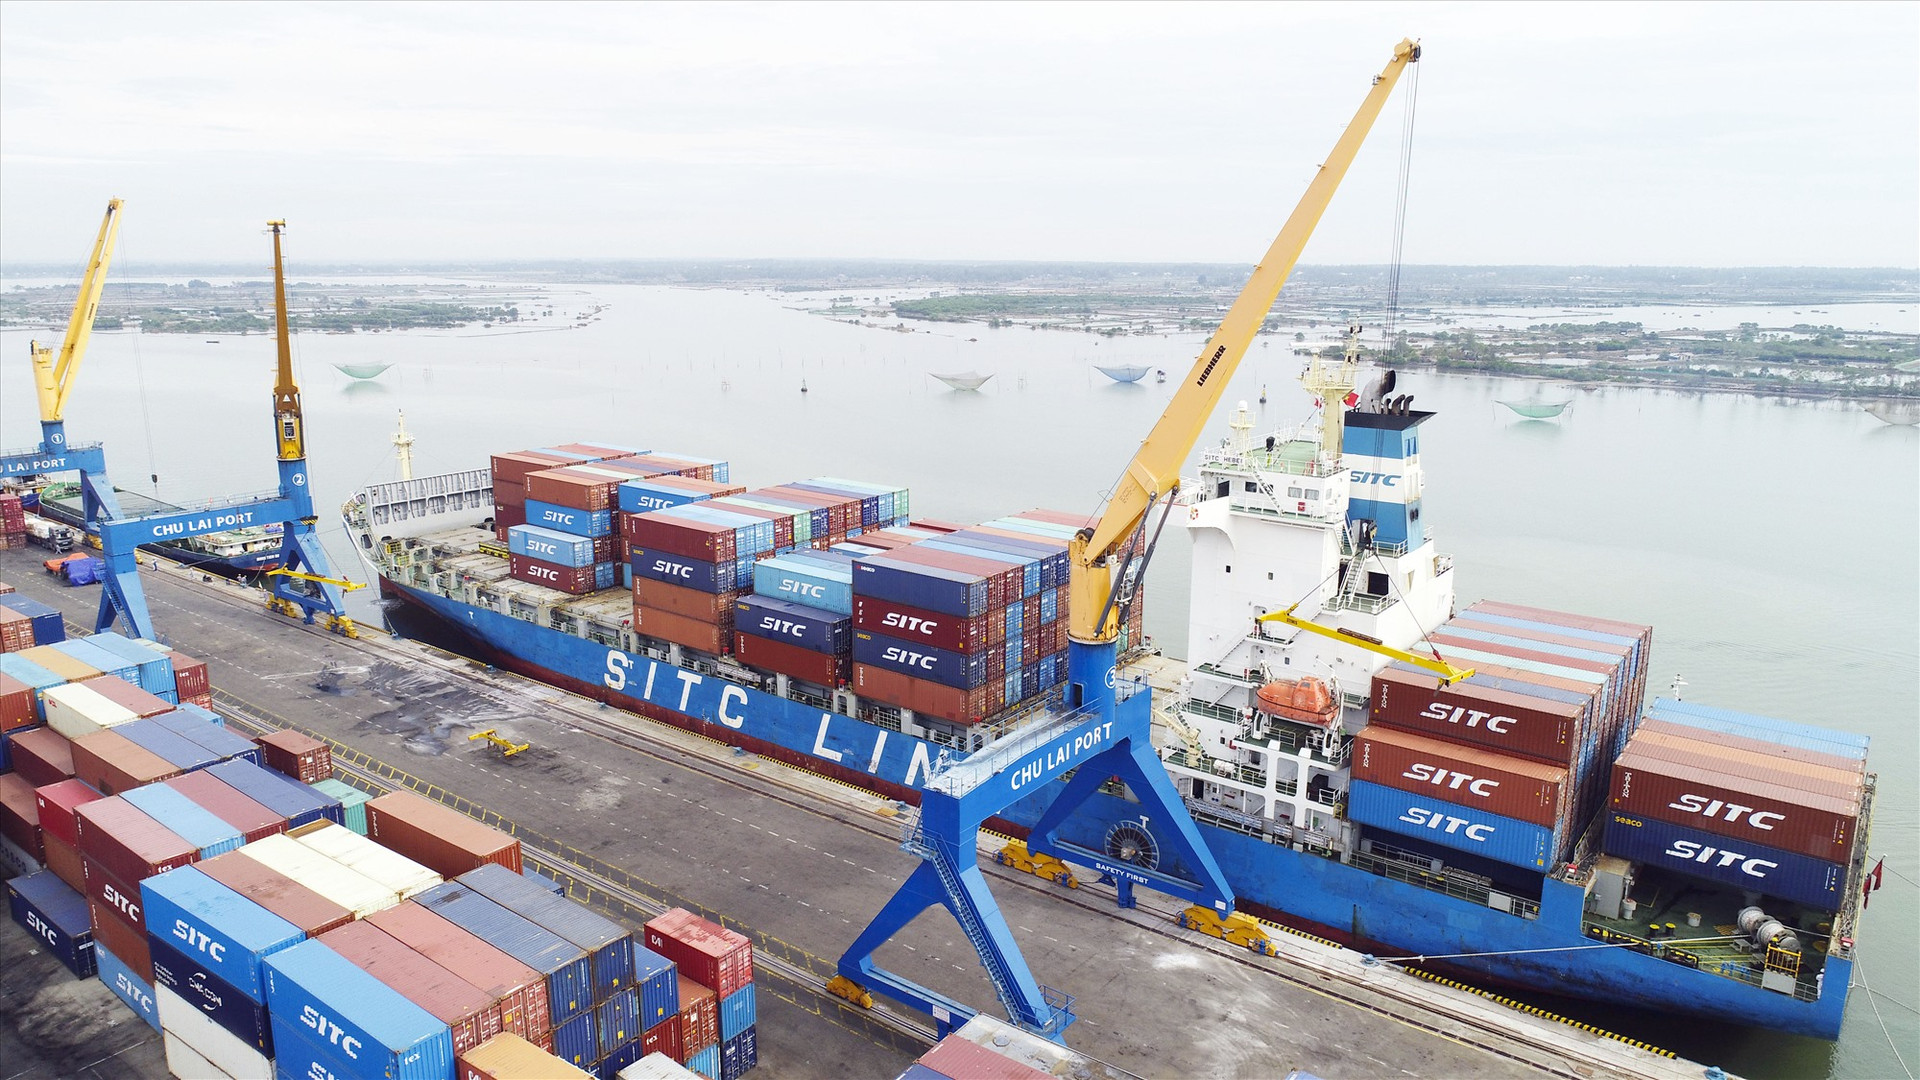 Năng lực logistics của cảng Chu Lai - Trường Hải ngày càng phát triển, kỳ vọng trở thành một trung tâm giao nhận vận chuyển quốc tế tại miền Trung. Ảnh: T.D